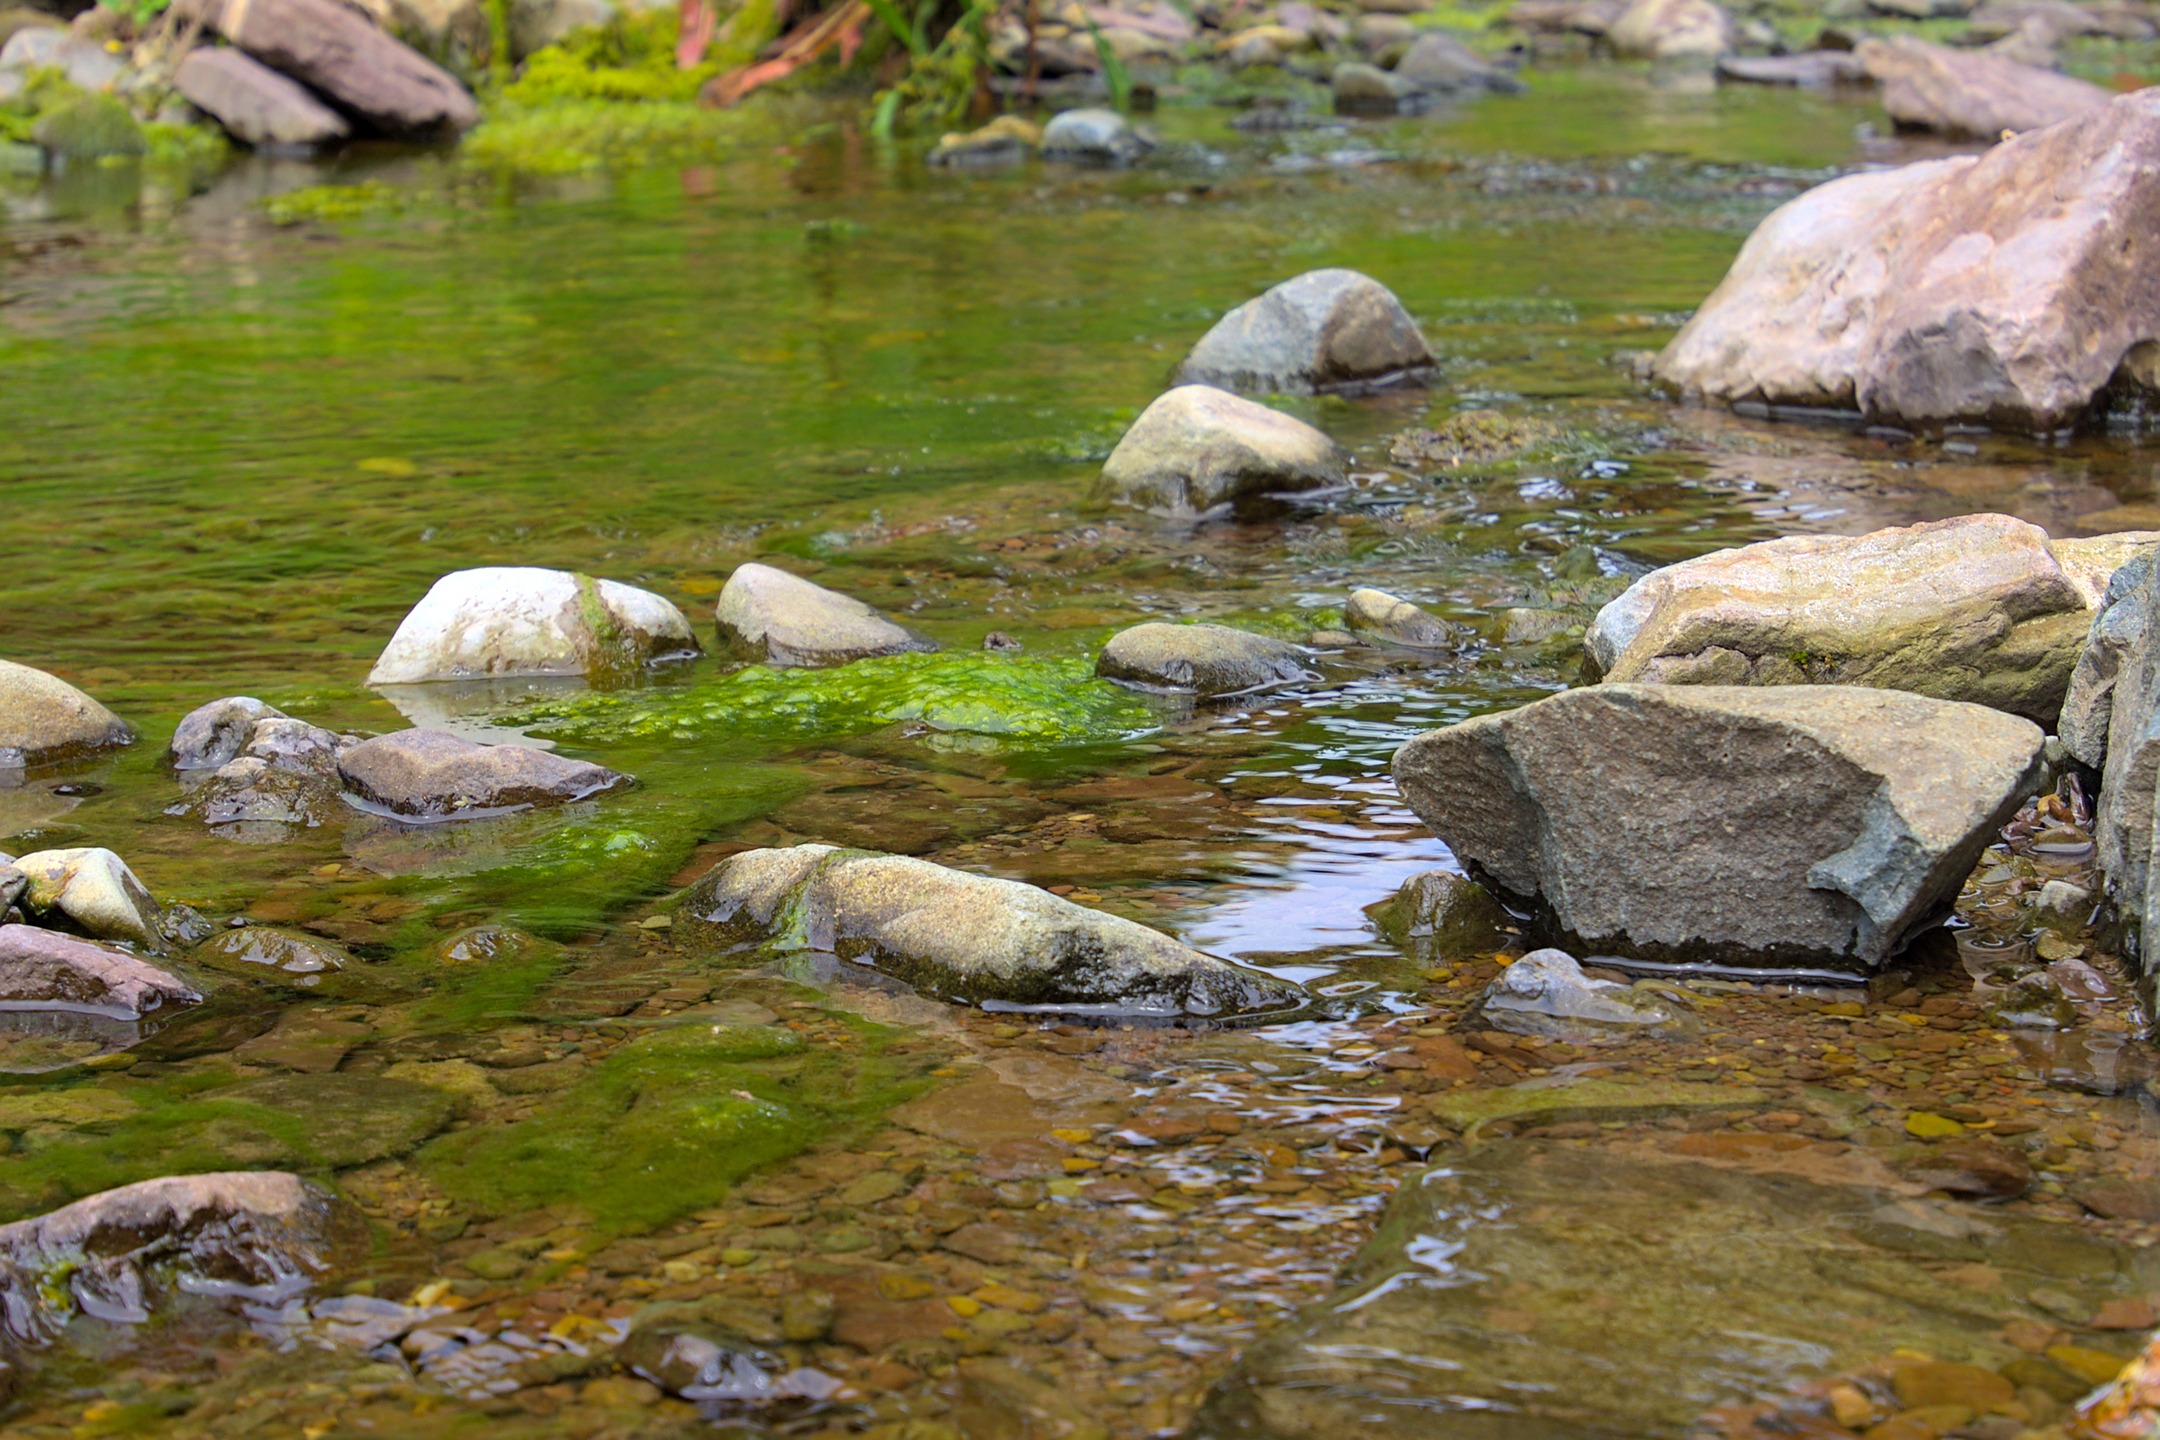 moss on rocks in a brook